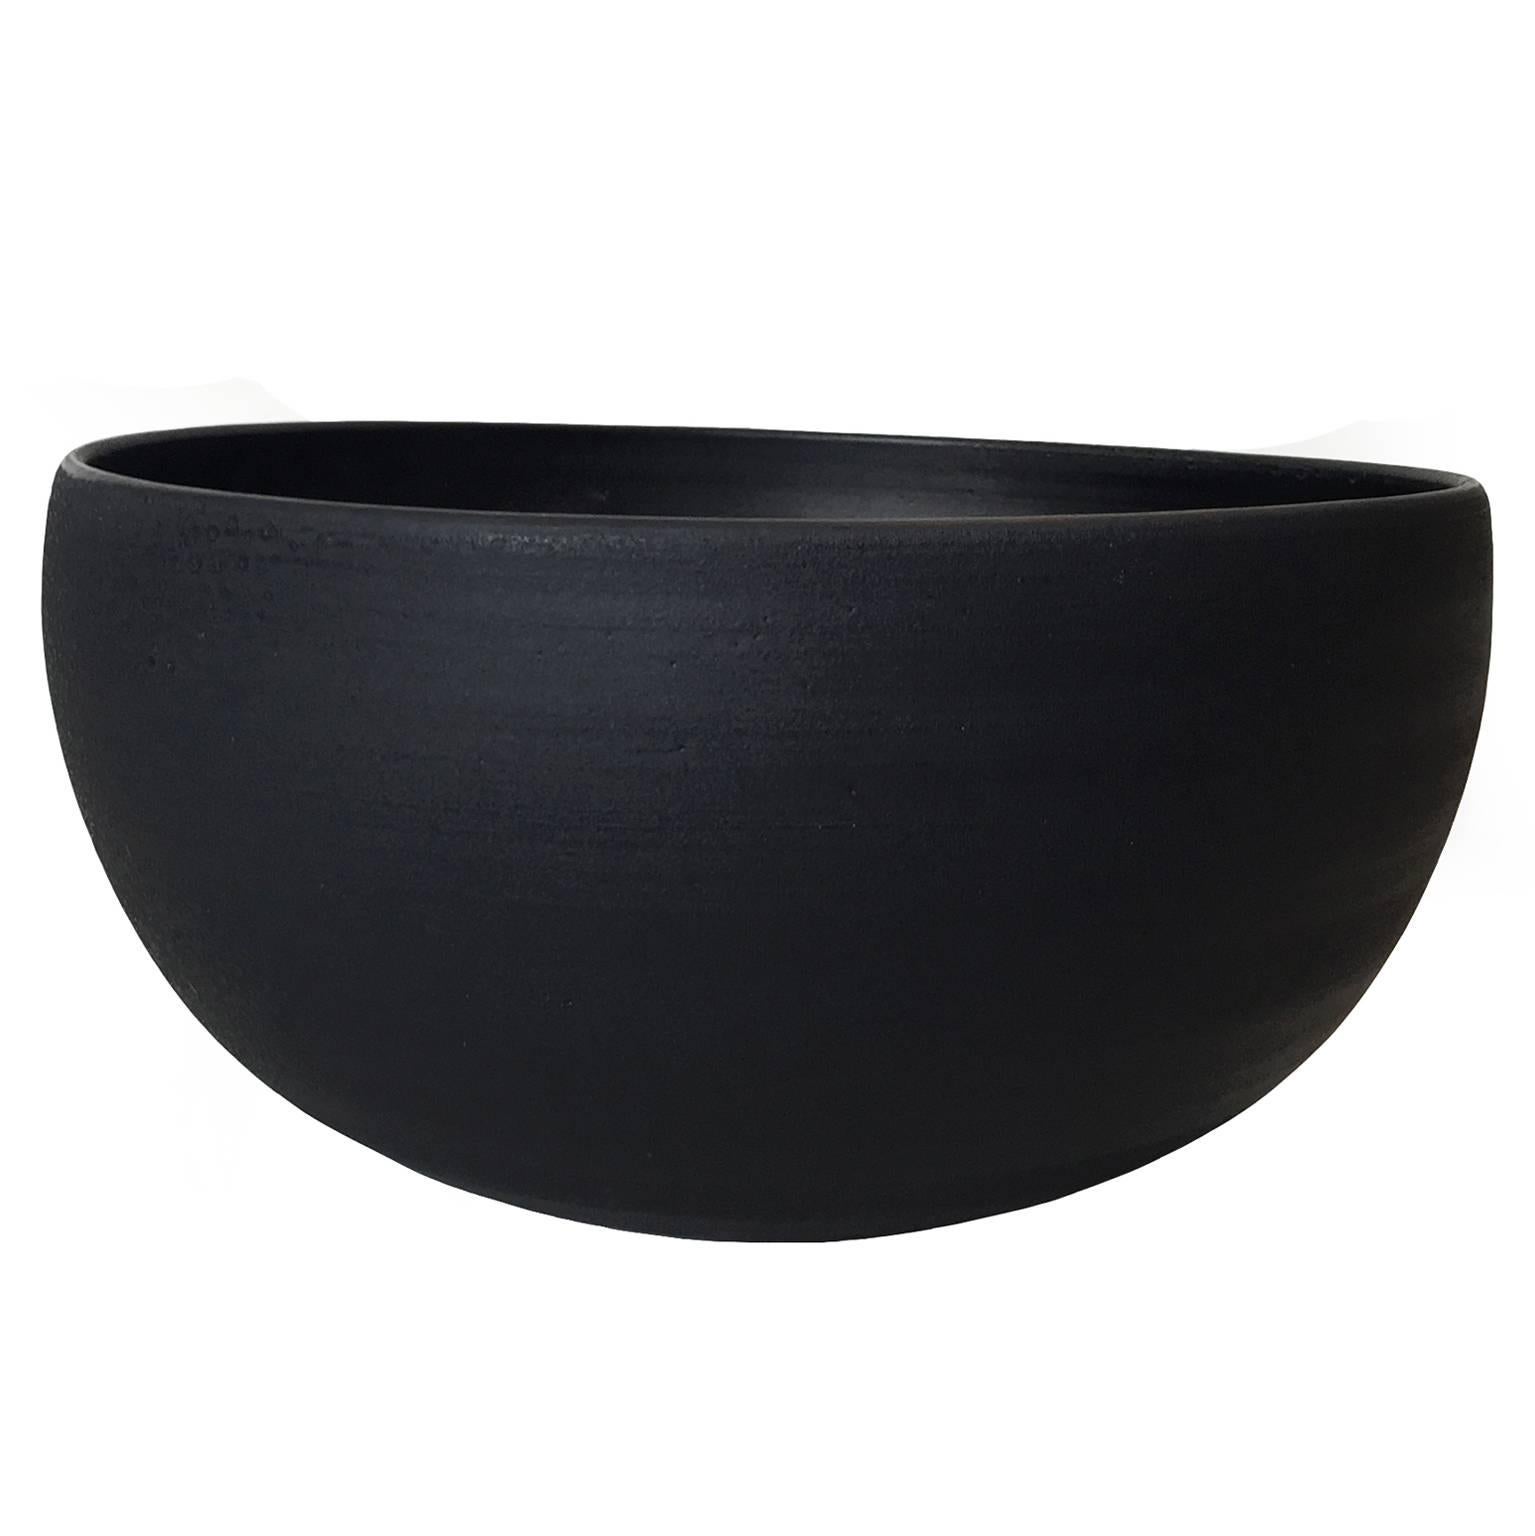 Black Wax Curved Bowl by Sandi Fellman